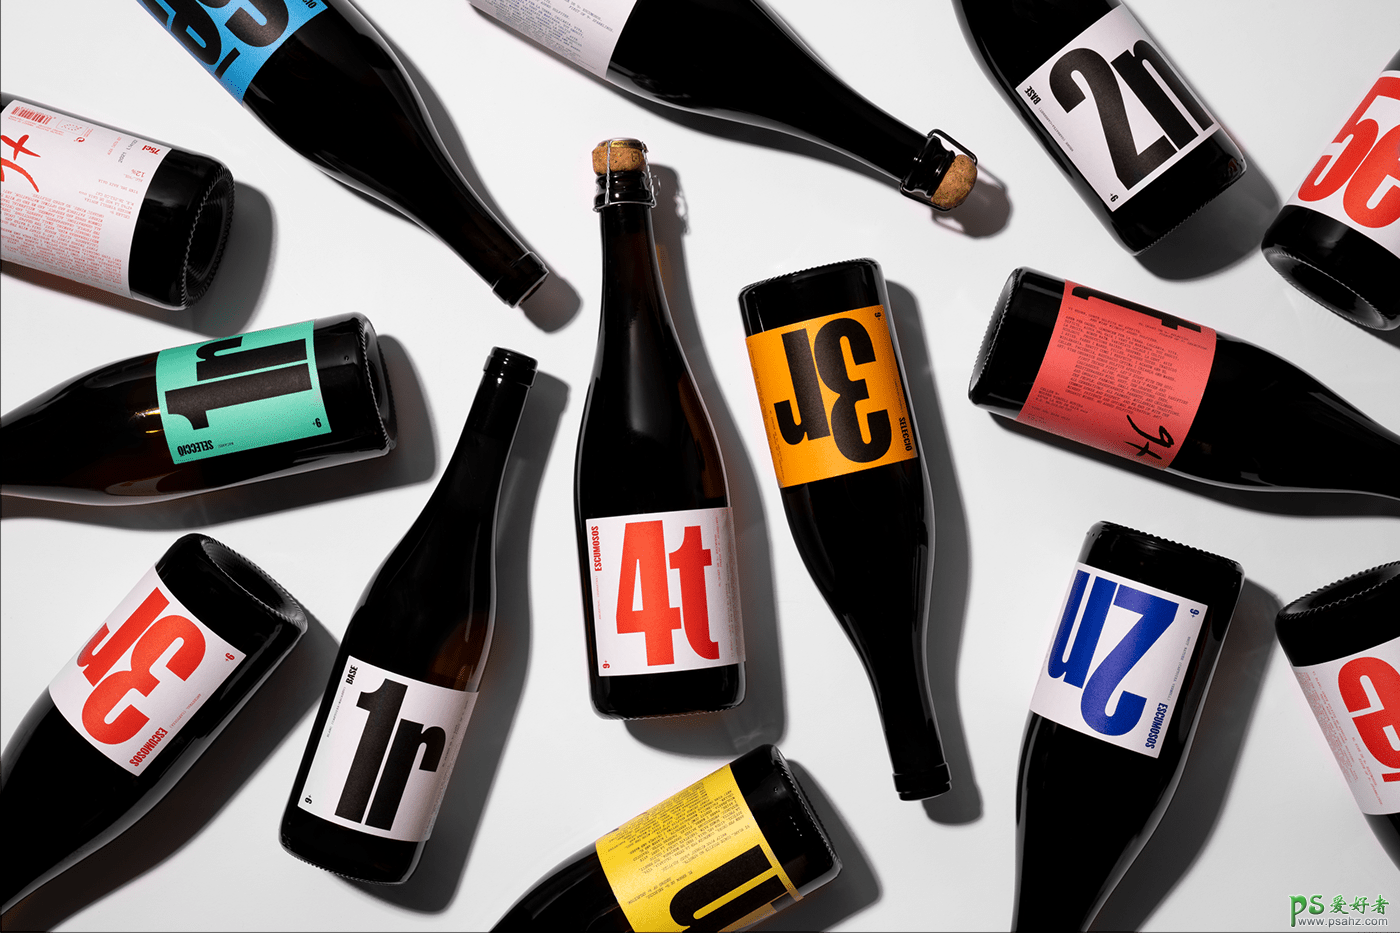 欣赏一组高端葡萄酒品牌包装设计作品。